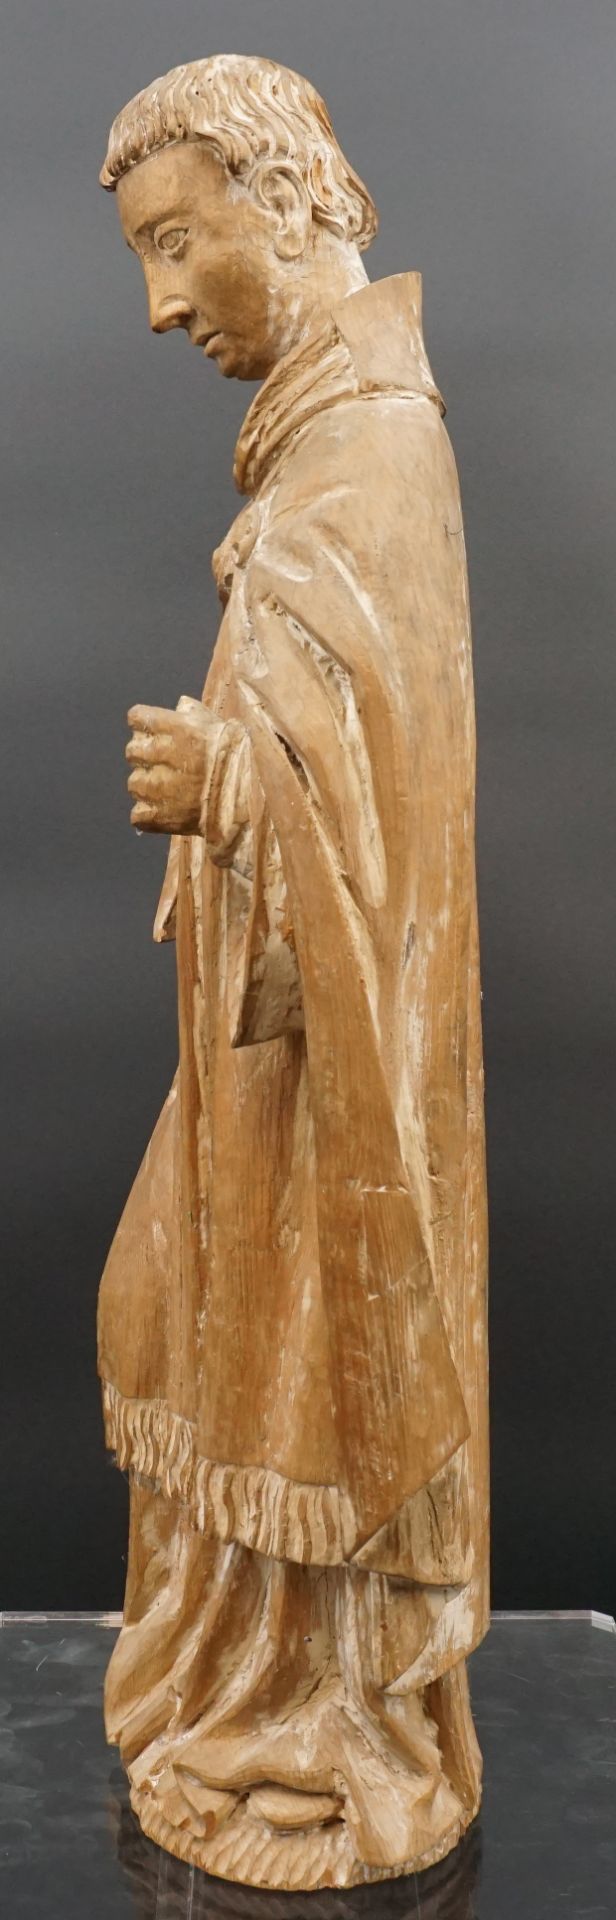 Holzfigur. Hl. Mönch. 19. Jahrhundert. - Bild 2 aus 14